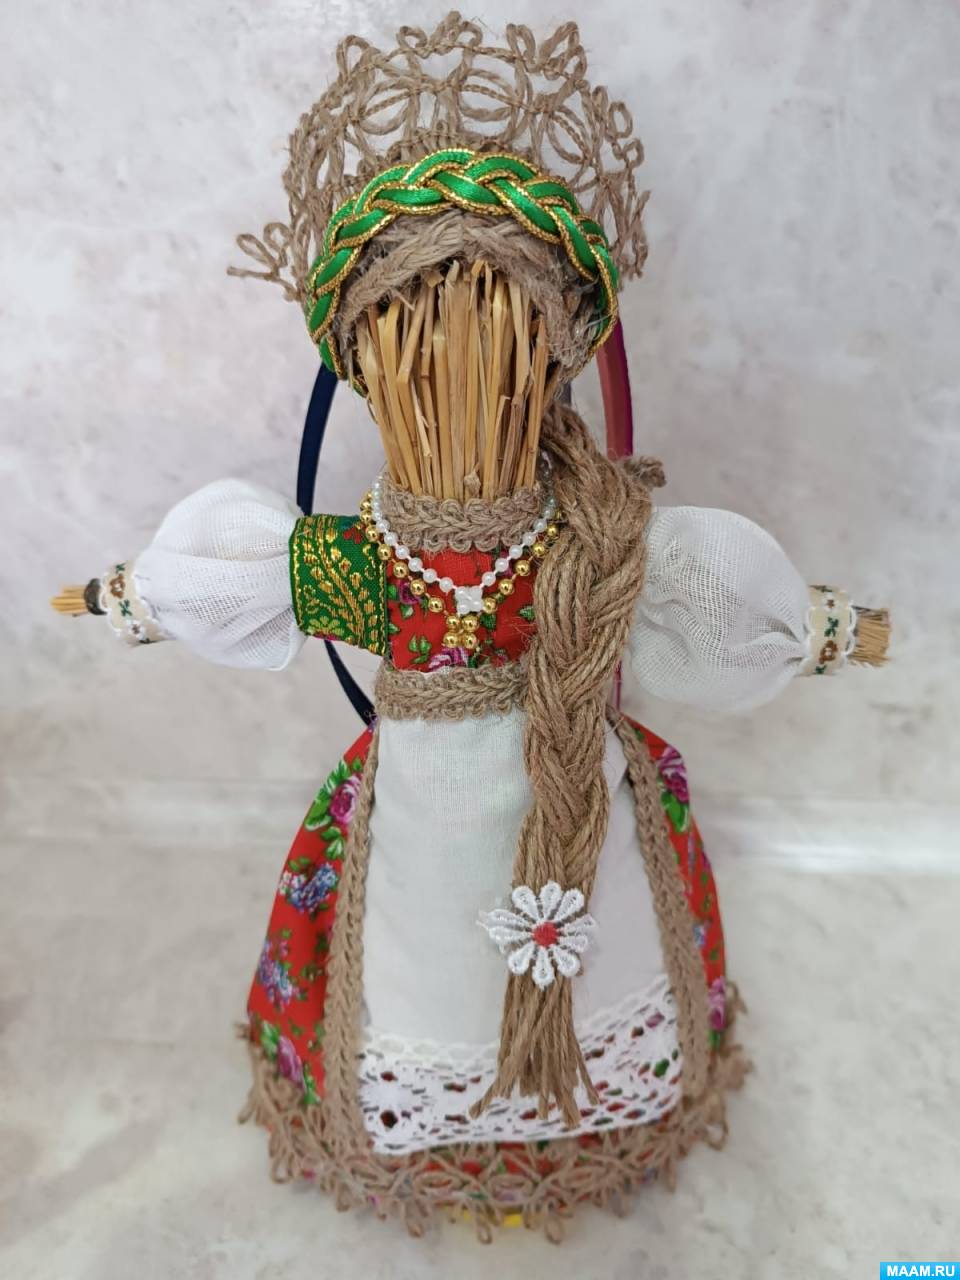 Технология изготовления народной традиционной куклы «Владимирская столбушка» Владимирской губернии